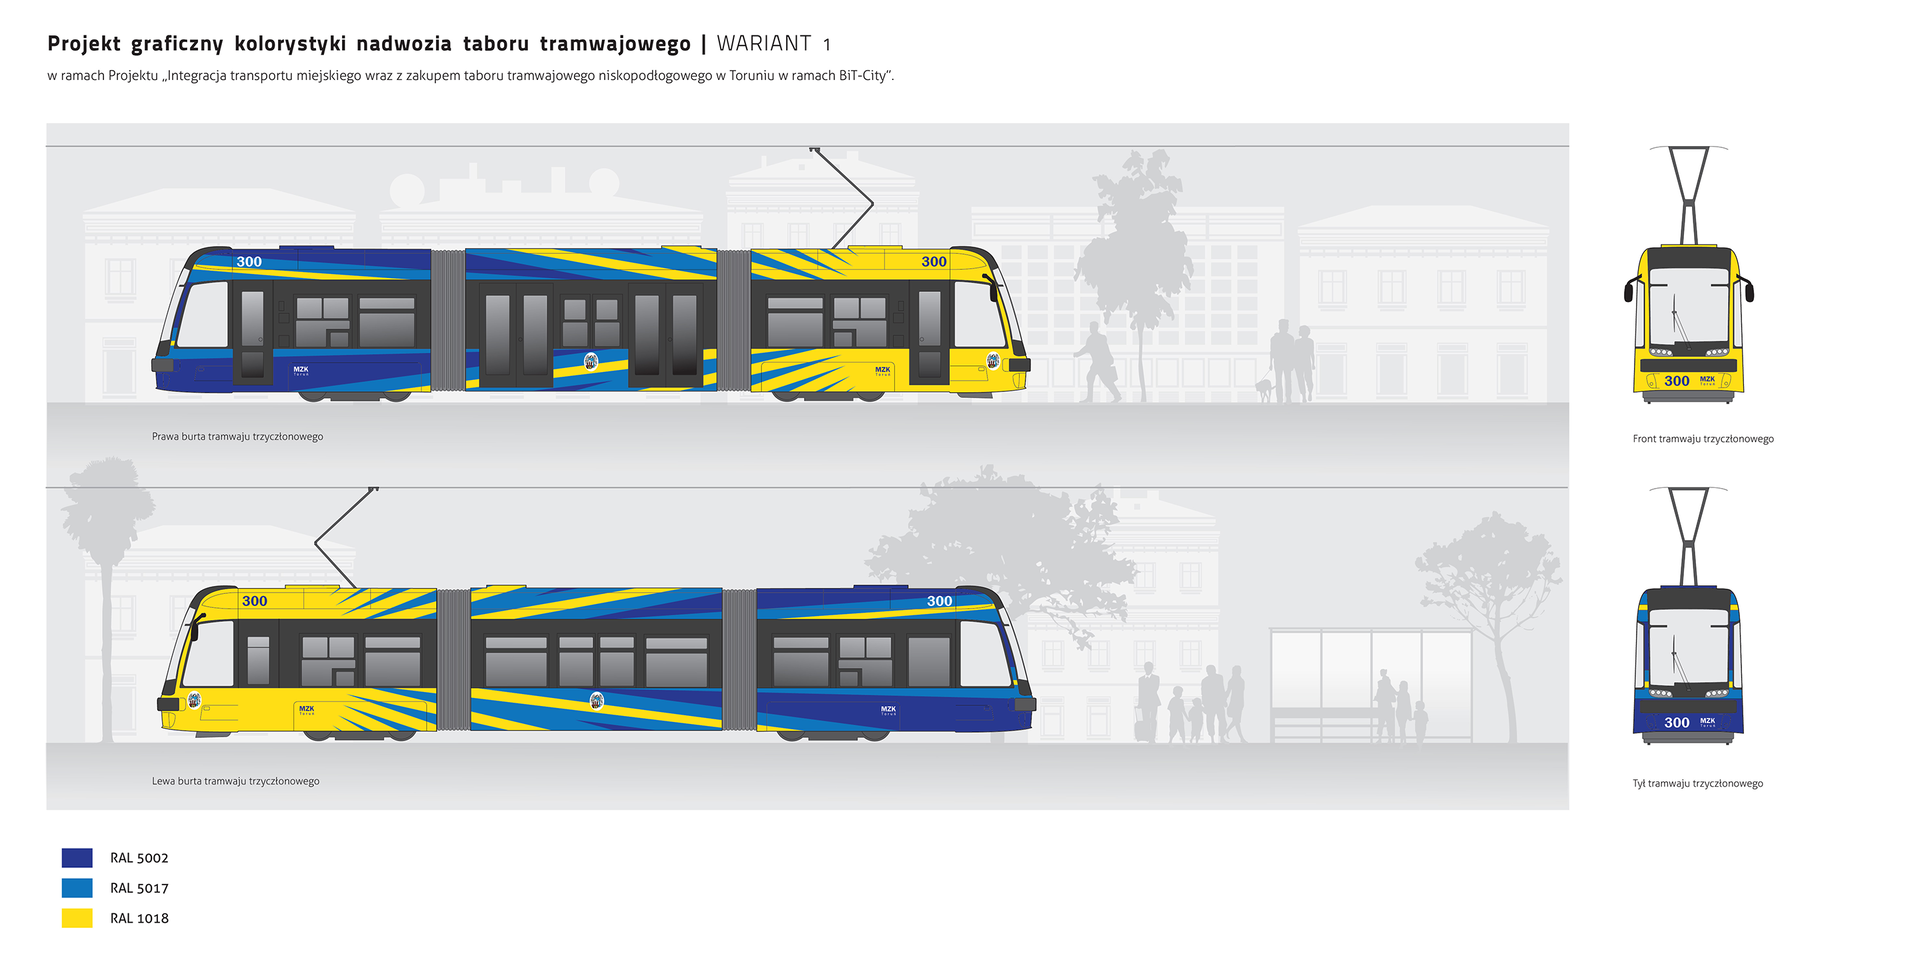 Ilustracja przedstawia projekt graficzny kolorystyki nadwozia taboru tramwajowego.